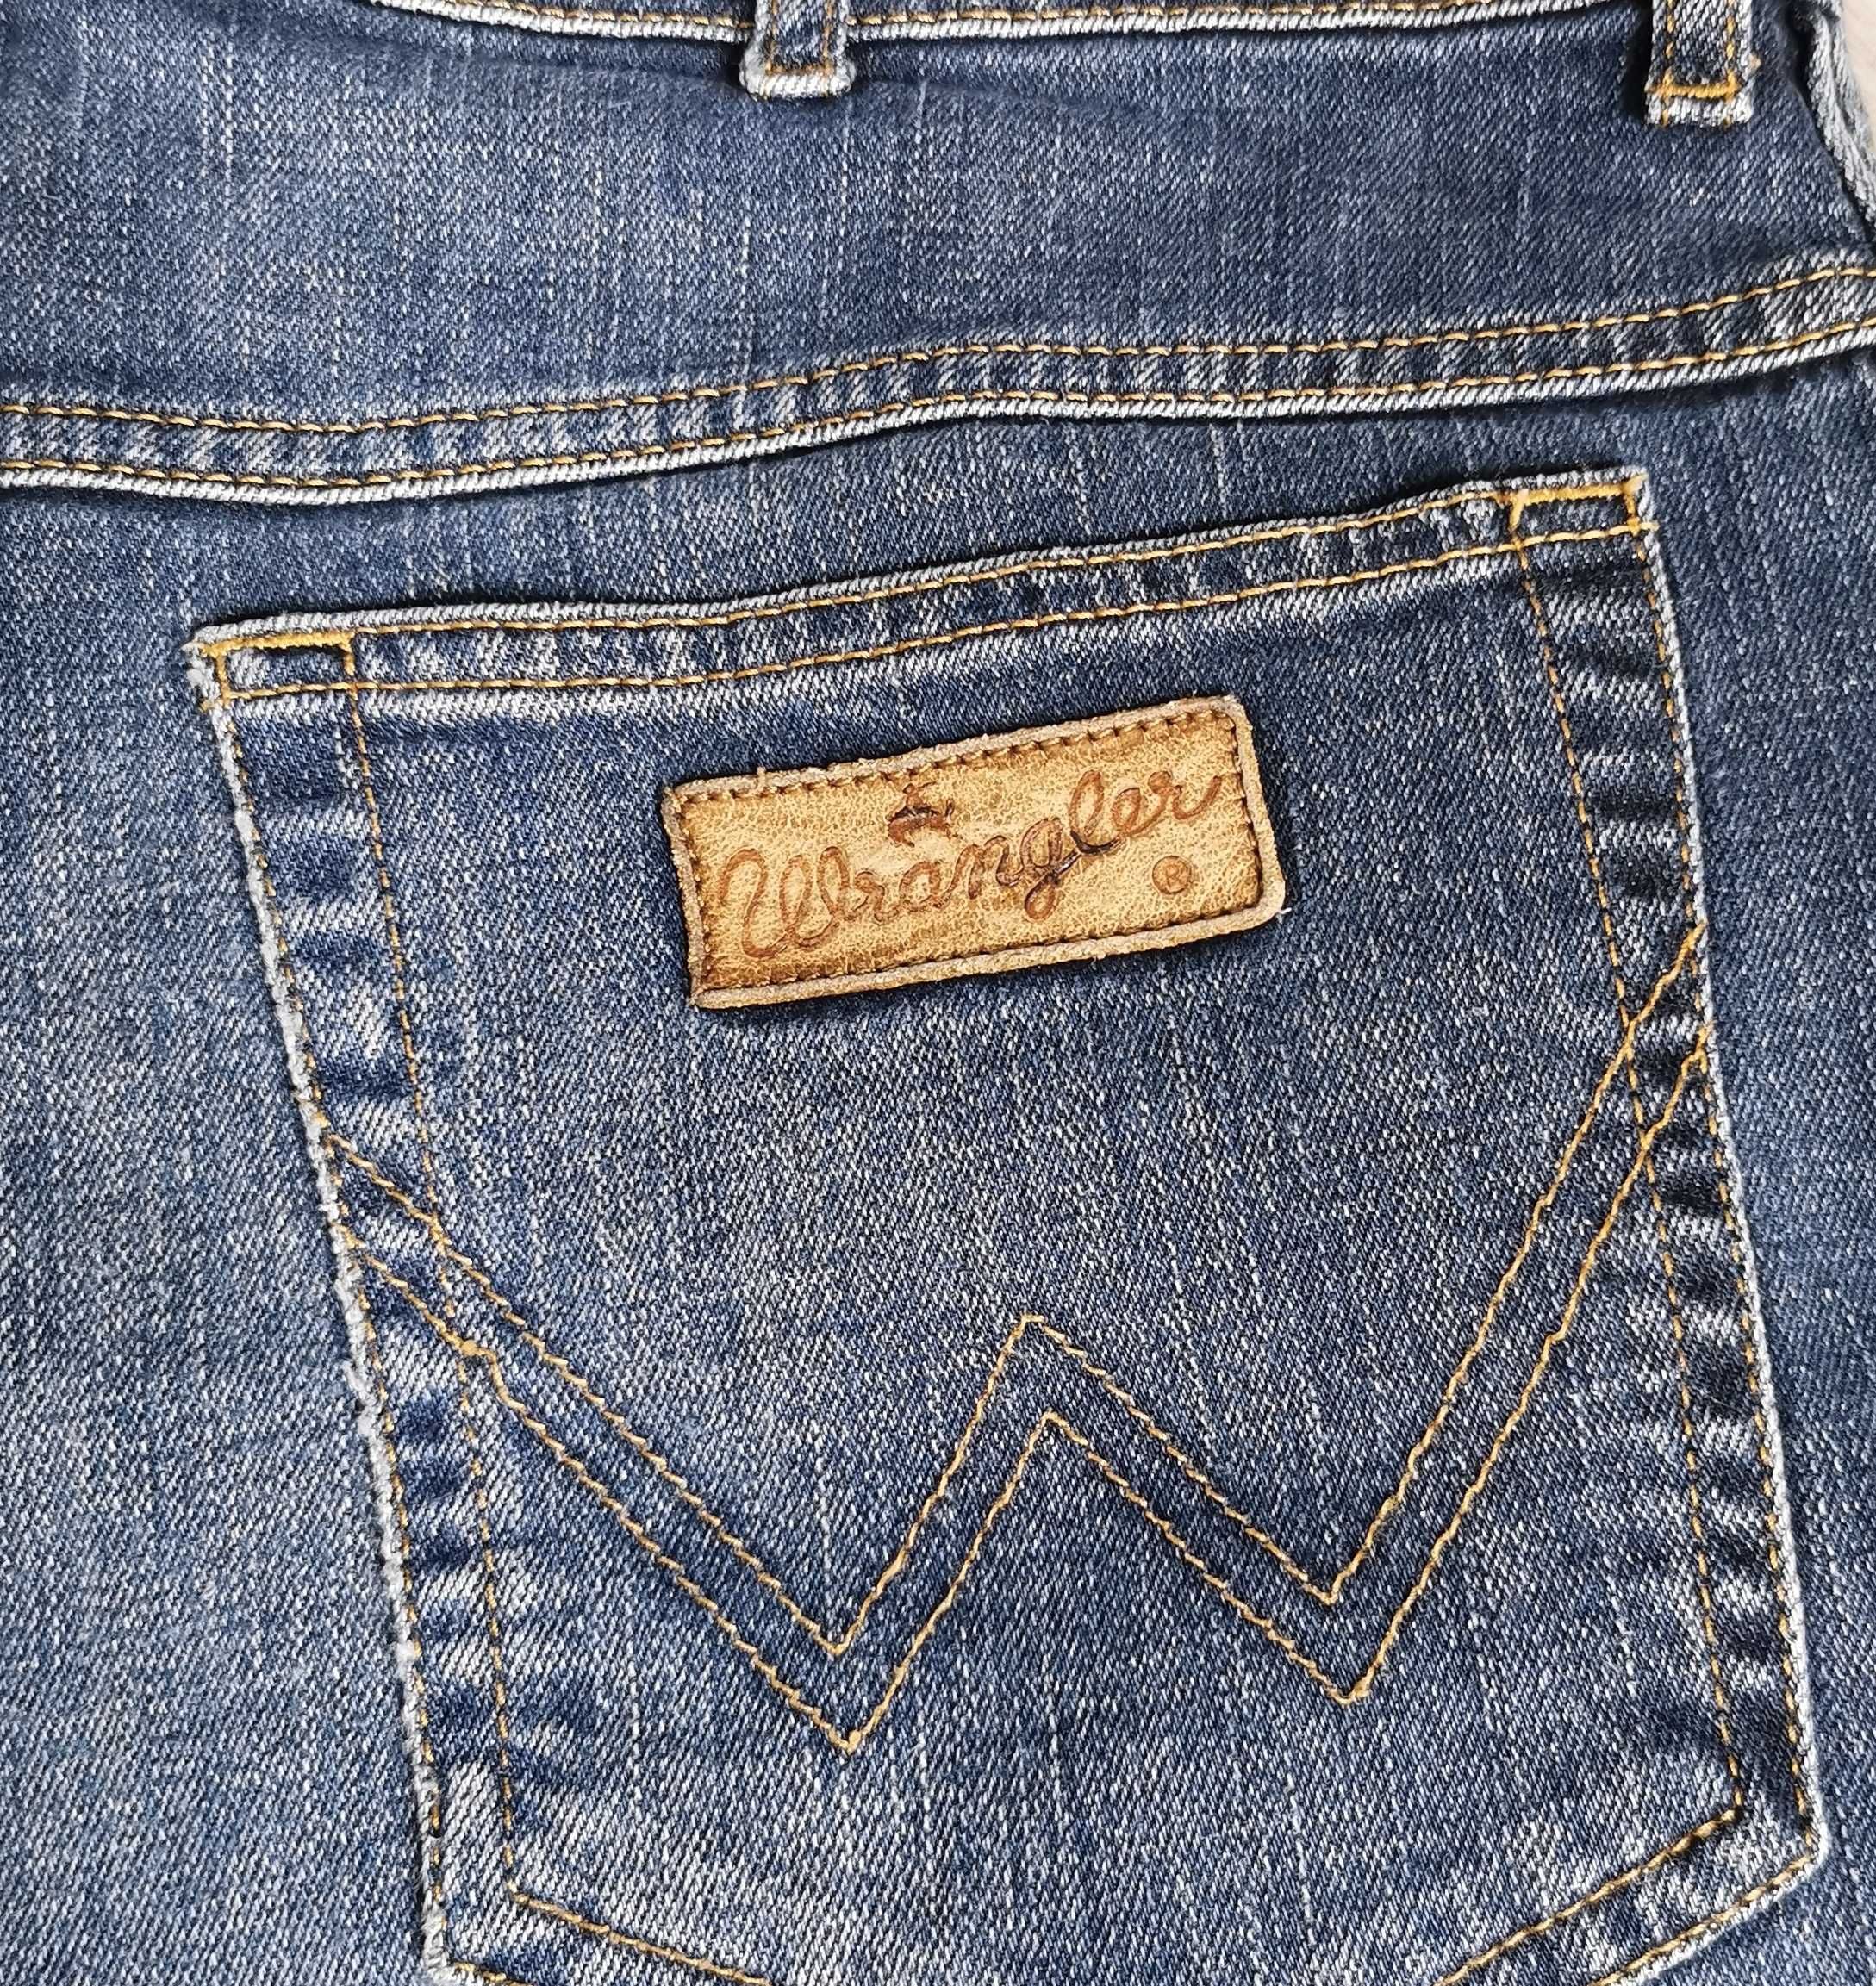 Spodnie jeansy Wrangler Texas stretch rozmiar W38 L32 3XL/4XL